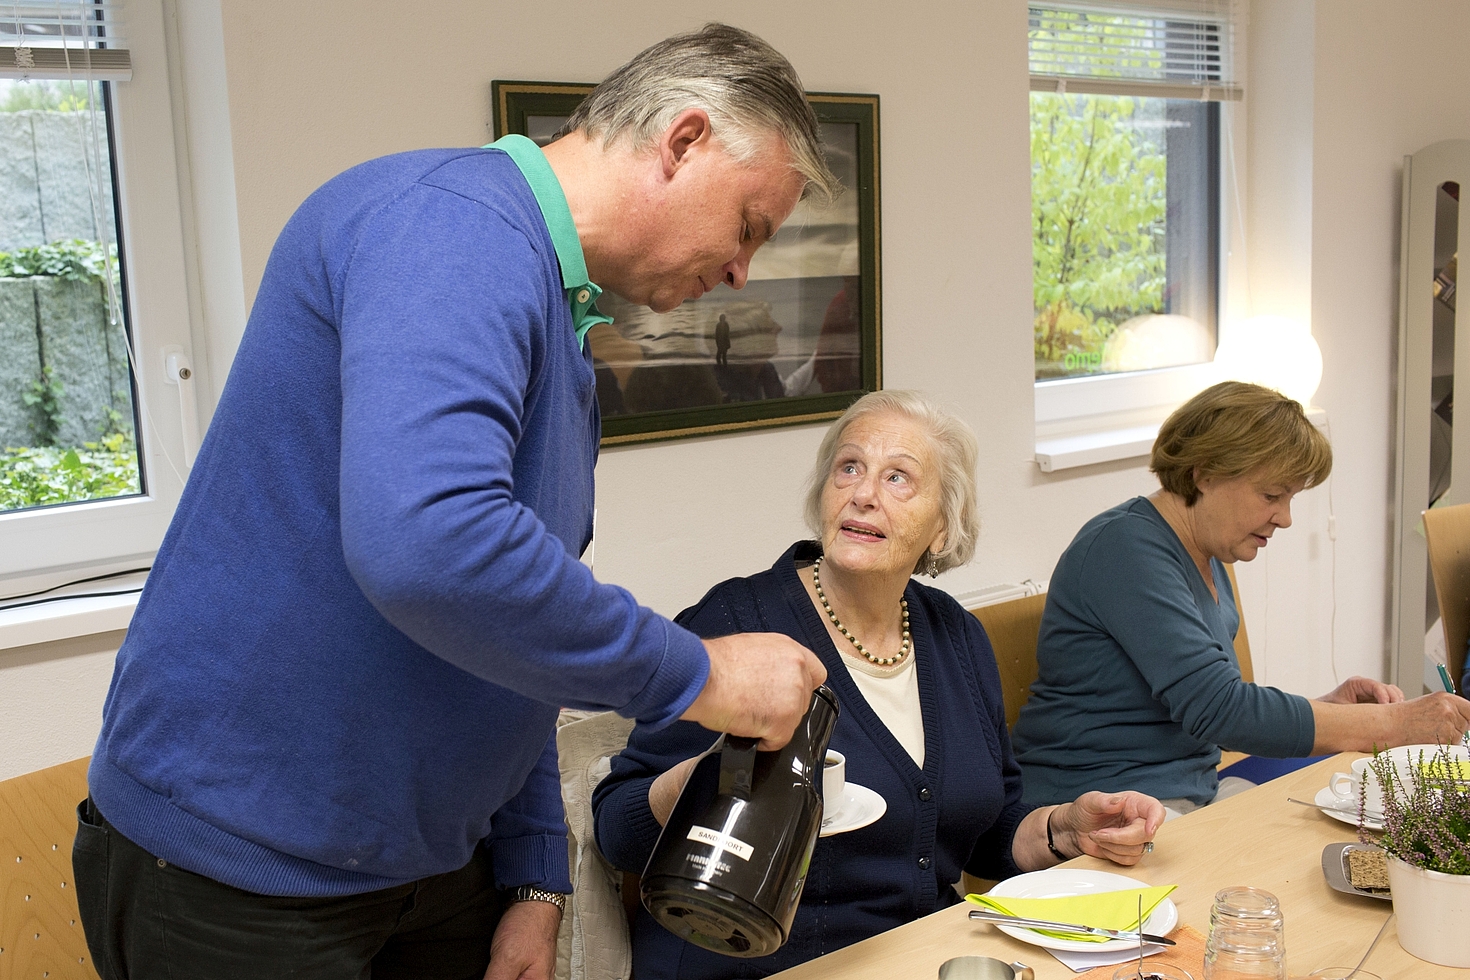 Foto: Mann schenkt älterer Frau Kaffee ein, eine weitere Frau sitzt daneben